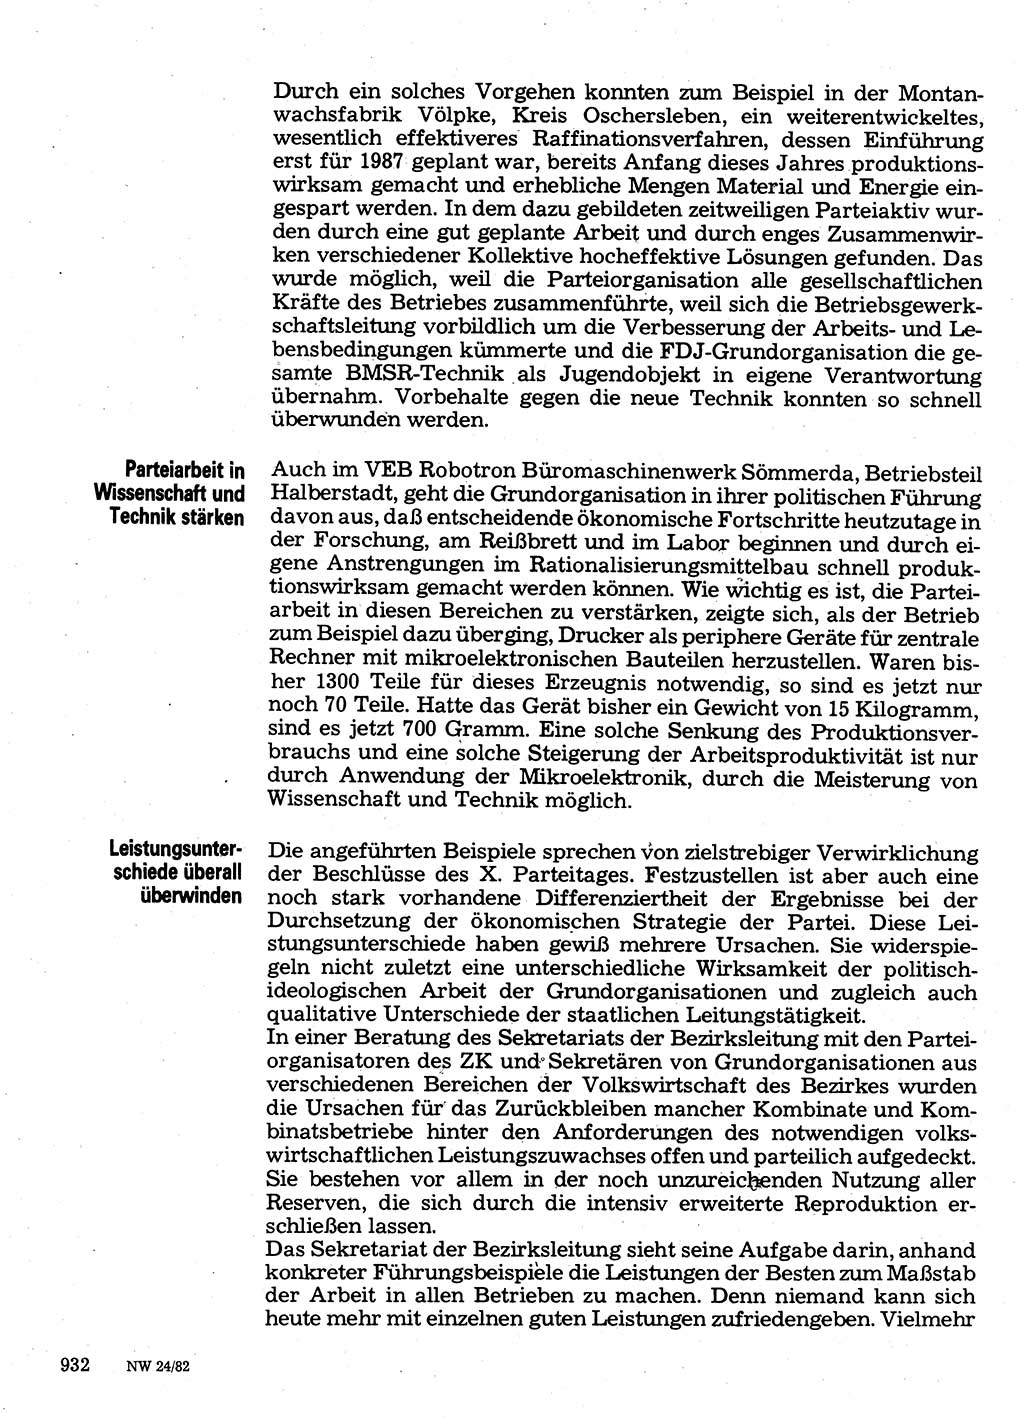 Neuer Weg (NW), Organ des Zentralkomitees (ZK) der SED (Sozialistische Einheitspartei Deutschlands) für Fragen des Parteilebens, 37. Jahrgang [Deutsche Demokratische Republik (DDR)] 1982, Seite 932 (NW ZK SED DDR 1982, S. 932)